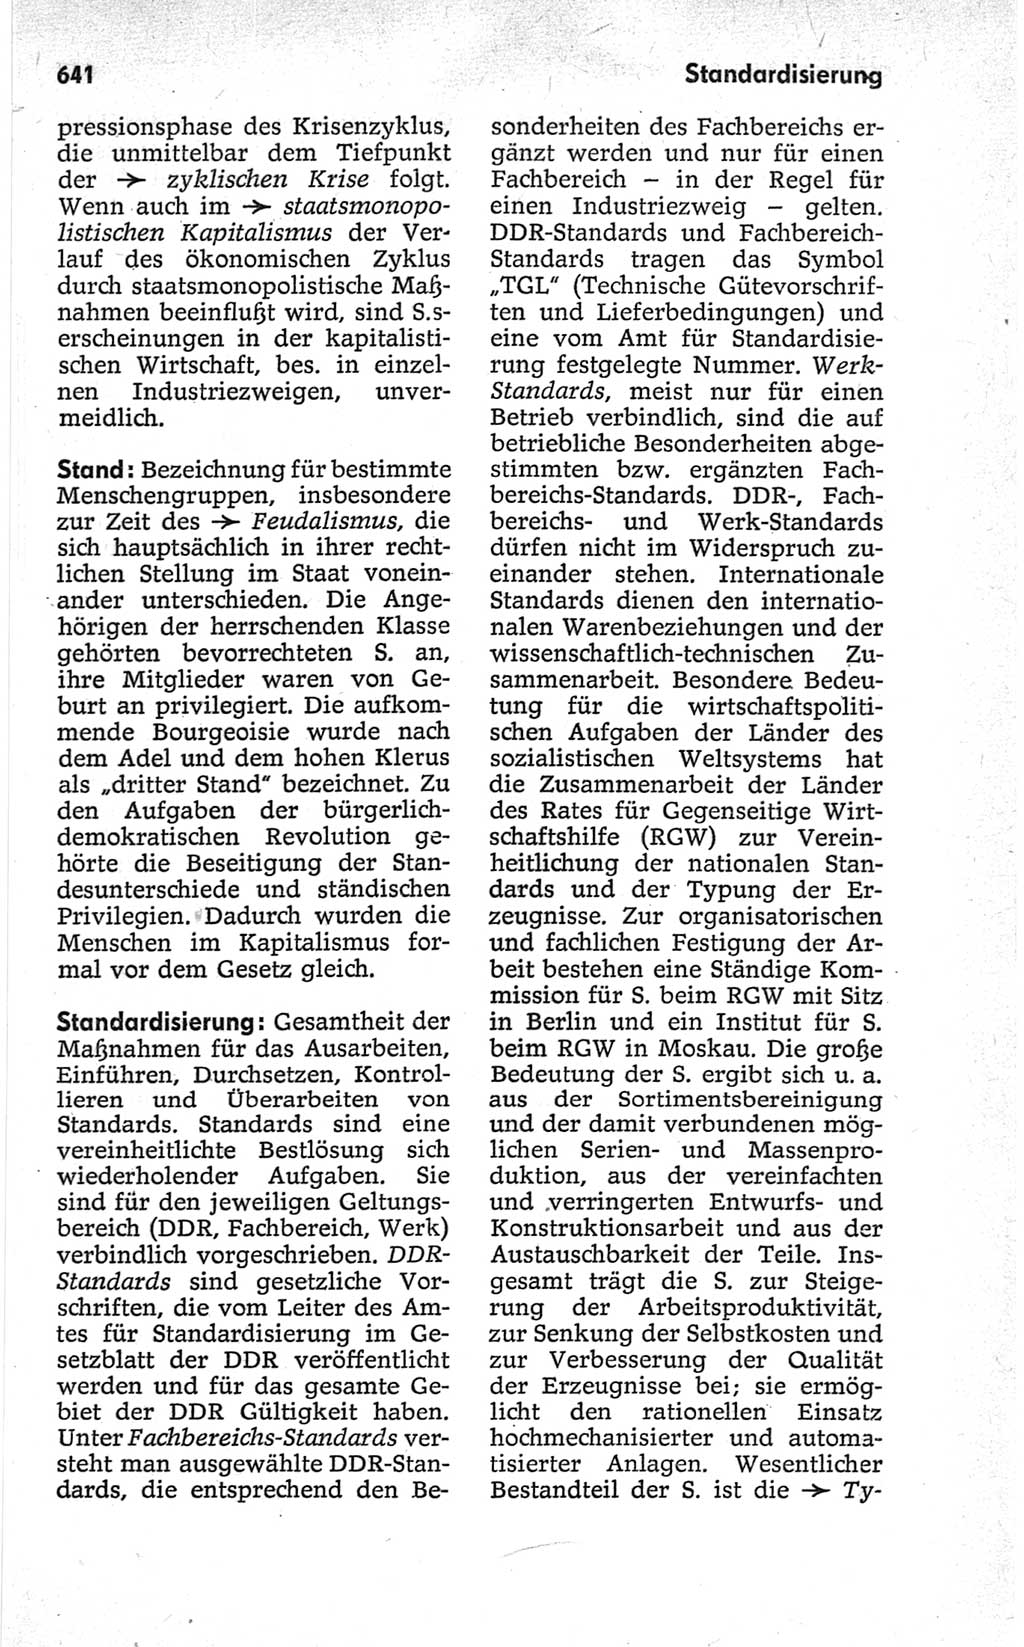 Kleines politisches Wörterbuch [Deutsche Demokratische Republik (DDR)] 1967, Seite 641 (Kl. pol. Wb. DDR 1967, S. 641)